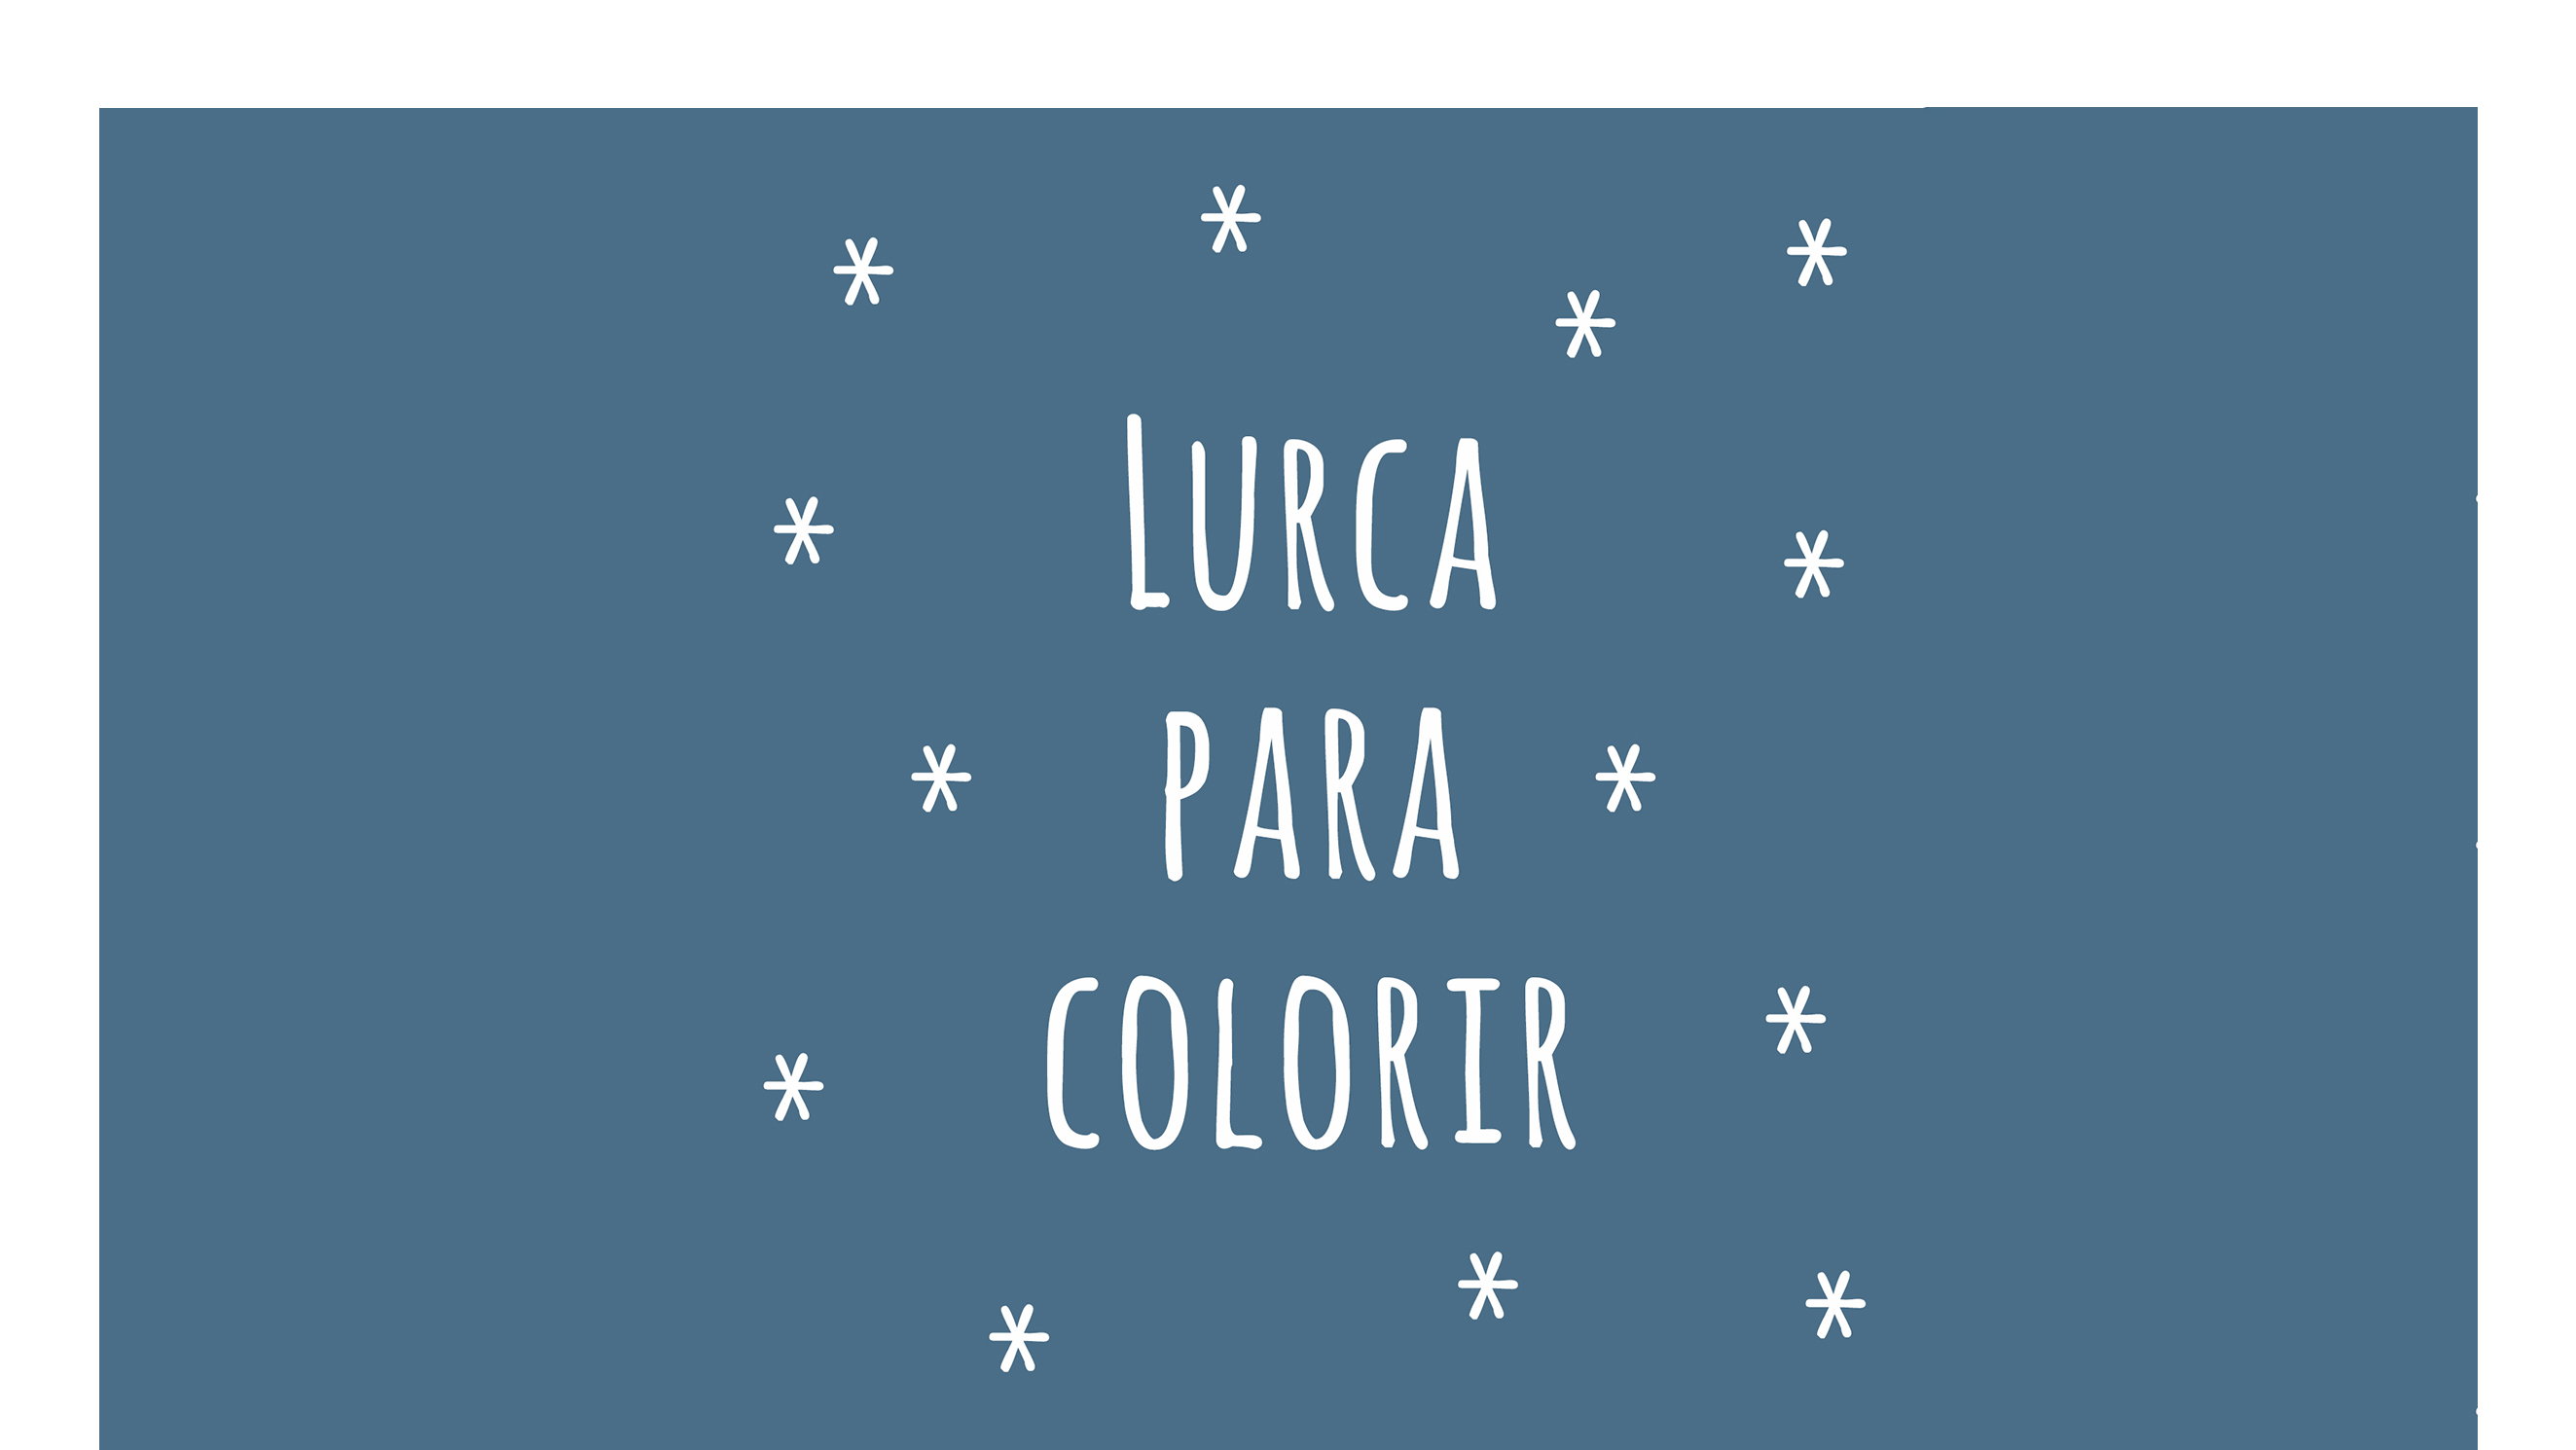 Lurca para Colorir | Lurca's Painting PDF